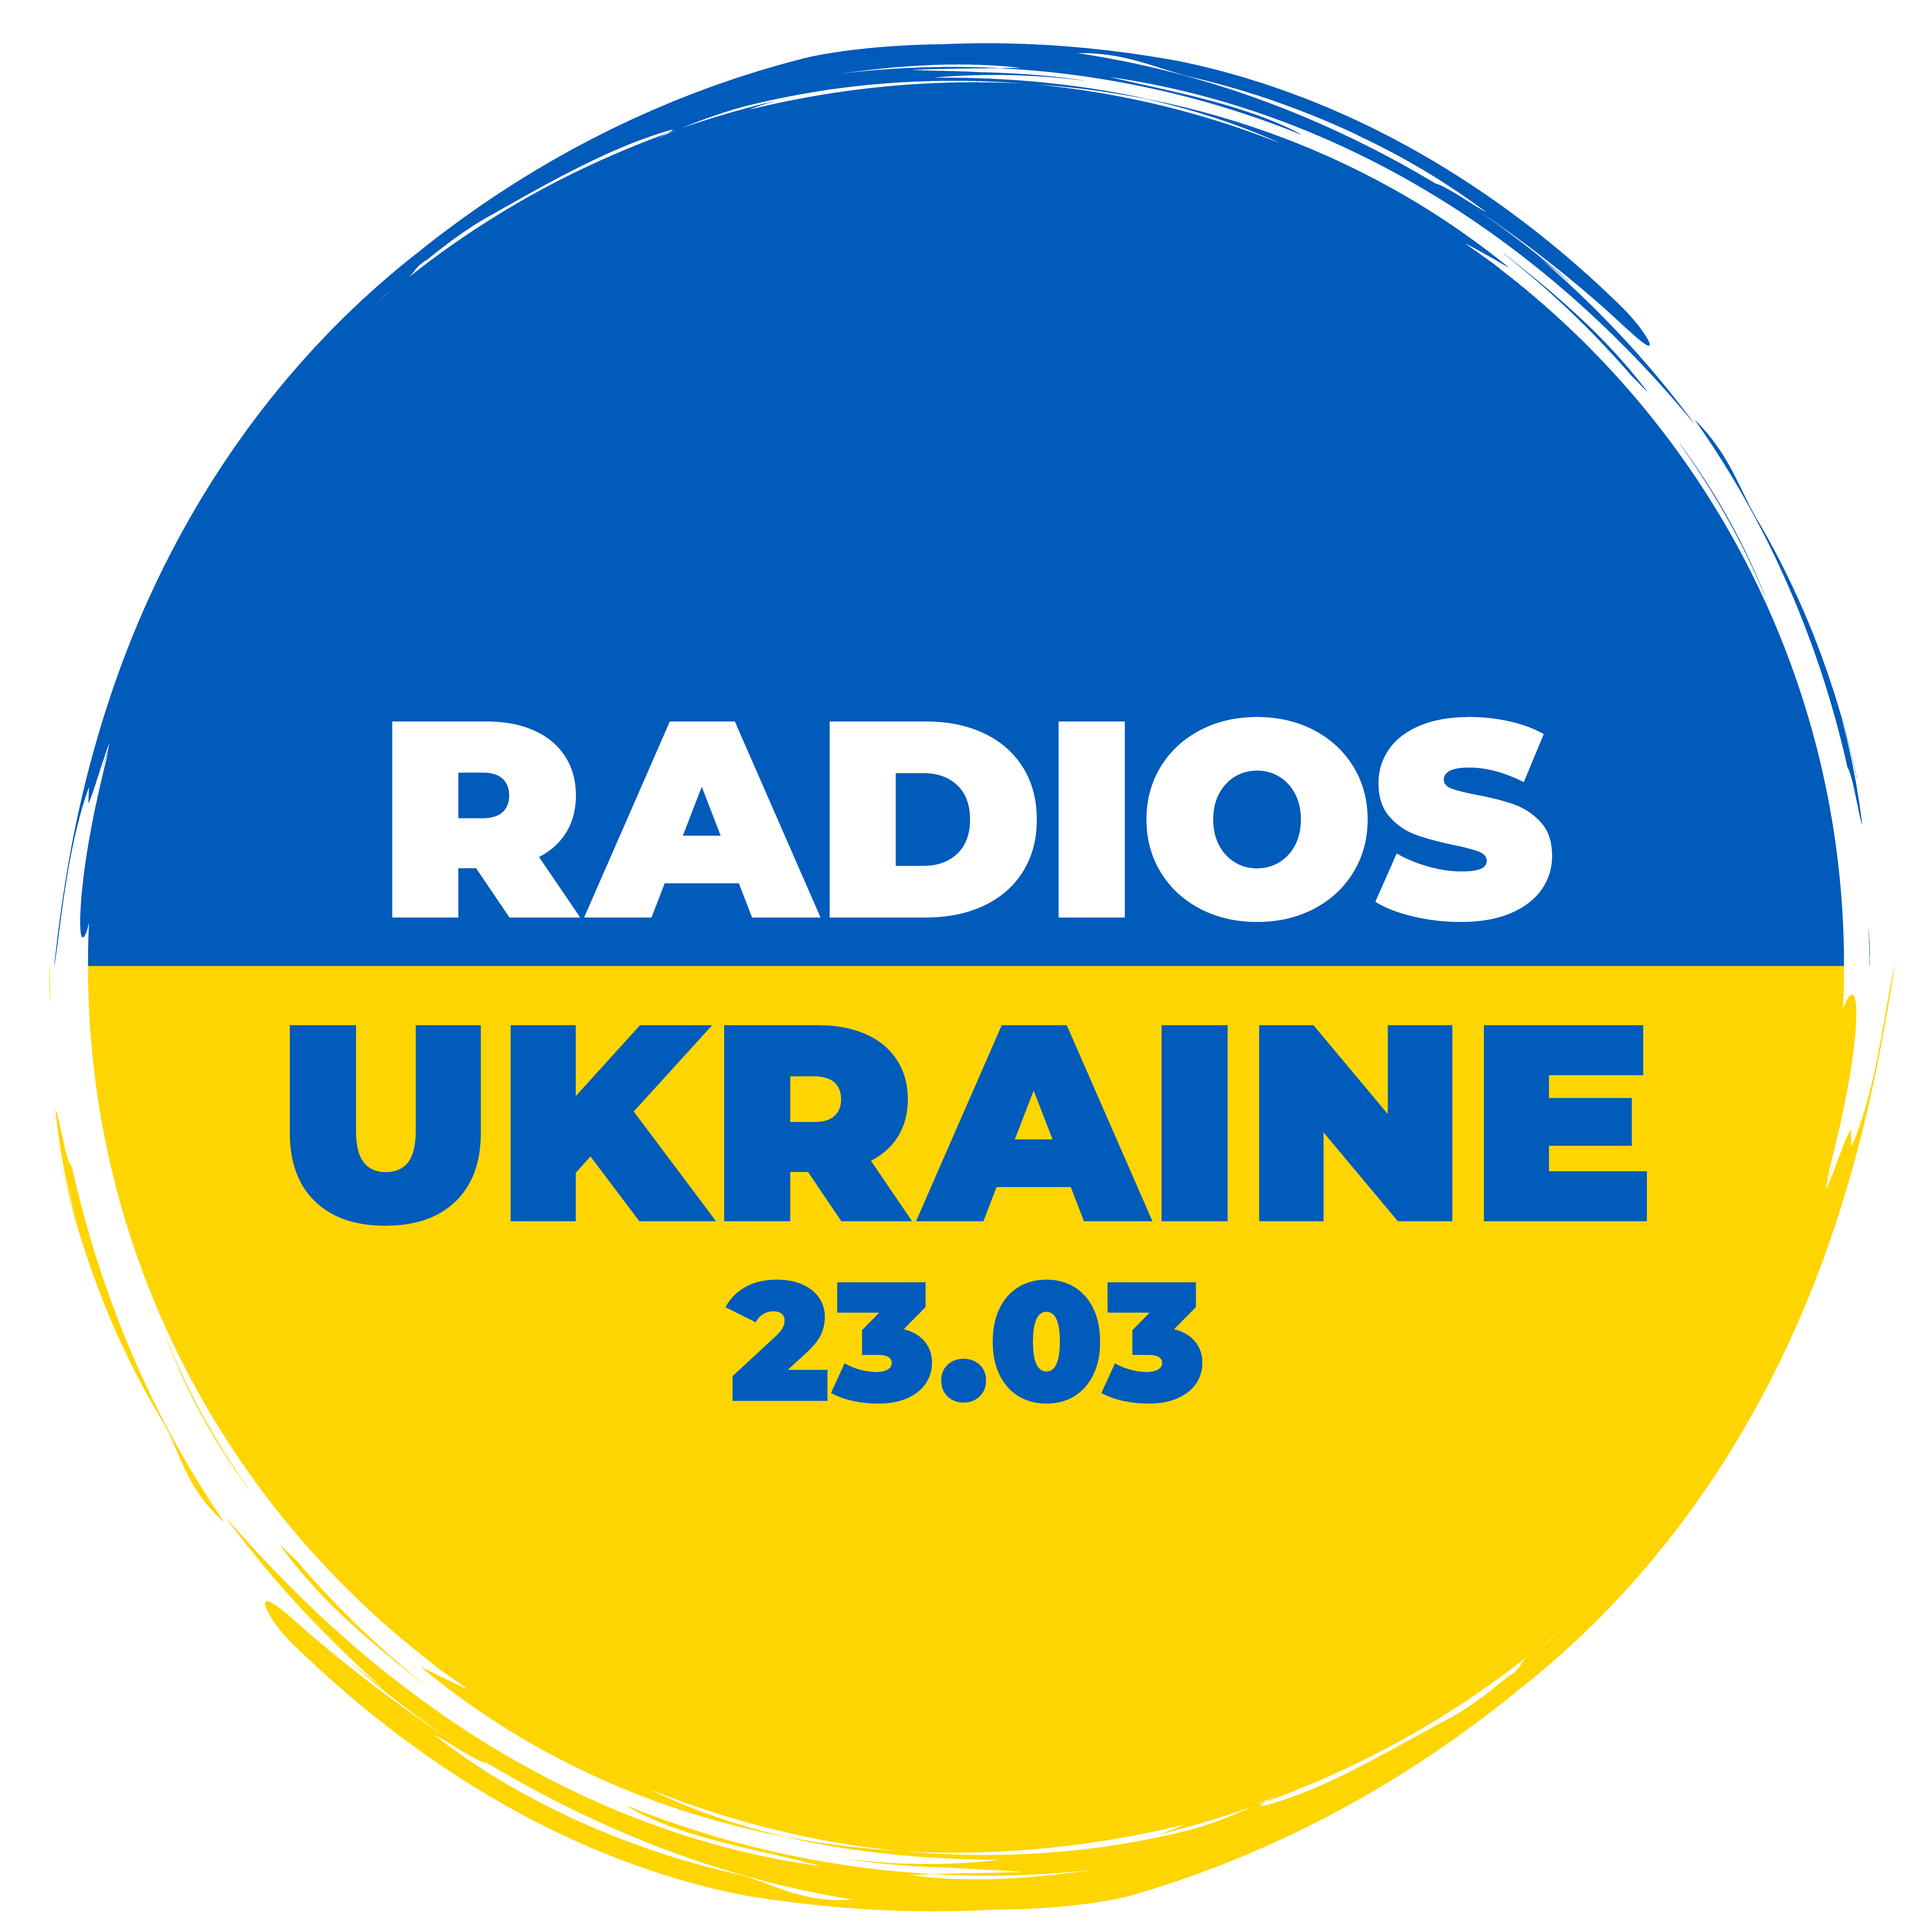 Belgique : 12 radios francophones s’unissent sous la bannière "Radios Ukraine"